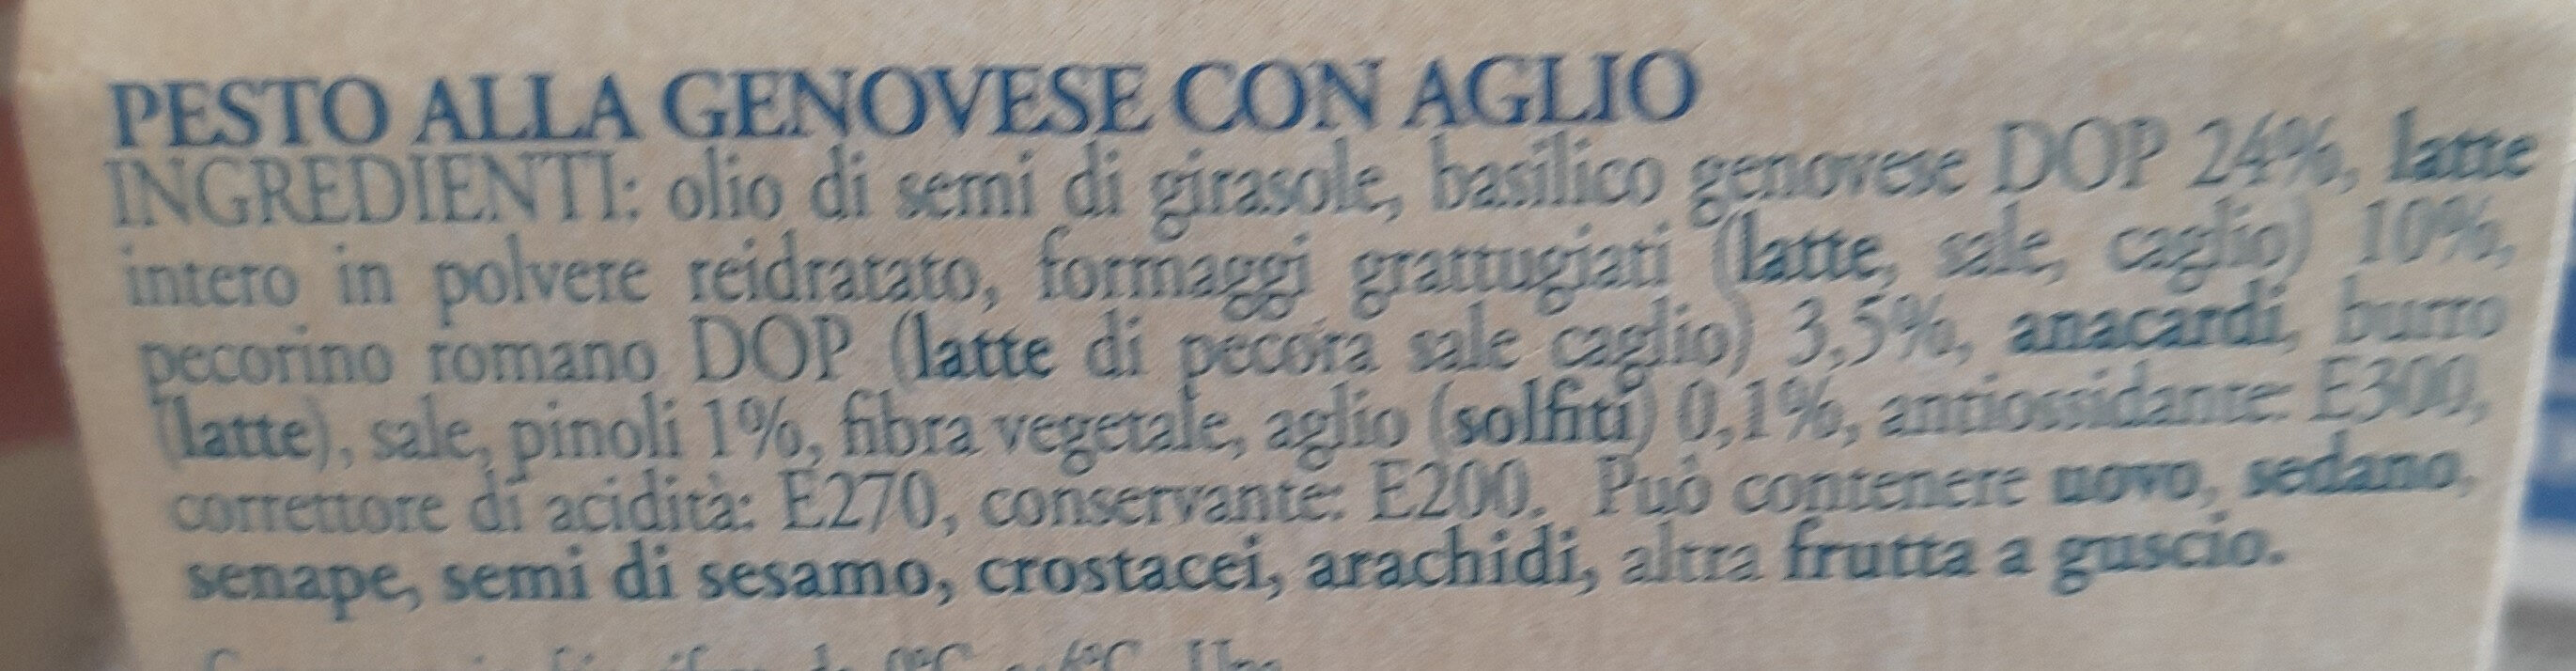 Pesto alla Genovese con aglio - Ingredienti - it